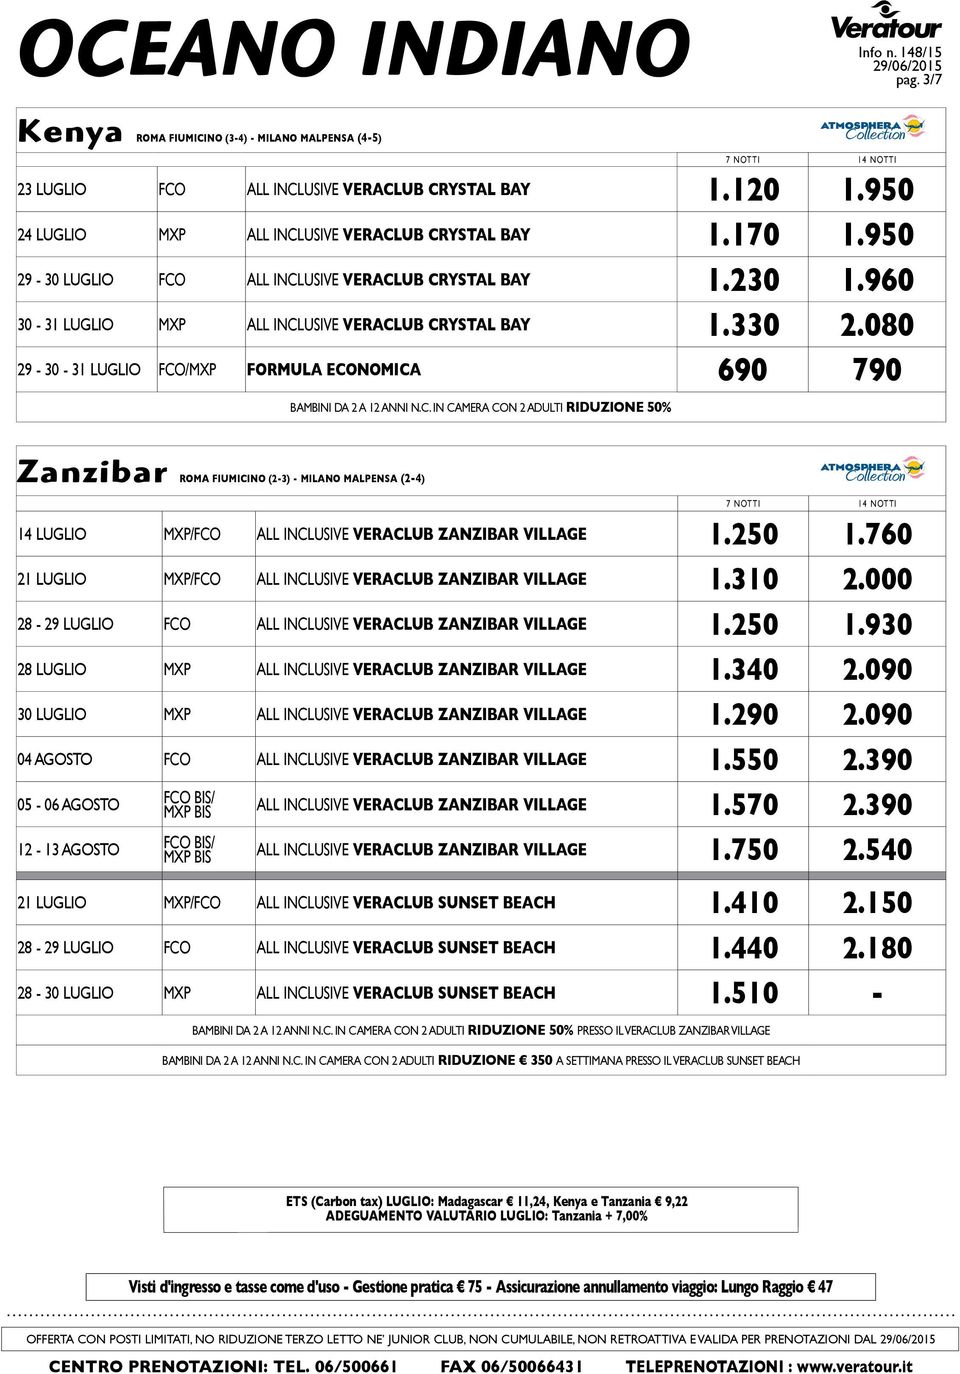 080 29-30 - 31 LUGLIO FCO/MXP FORMULA ECONOMICA 690 790 Zanzibar ROMA FIUMICINO (2-3) - MILANO MALPENSA (2-4) 14 LUGLIO MXP/FCO ALL INCLUSIVE VERACLUB ZANZIBAR VILLAGE 1.250 1.